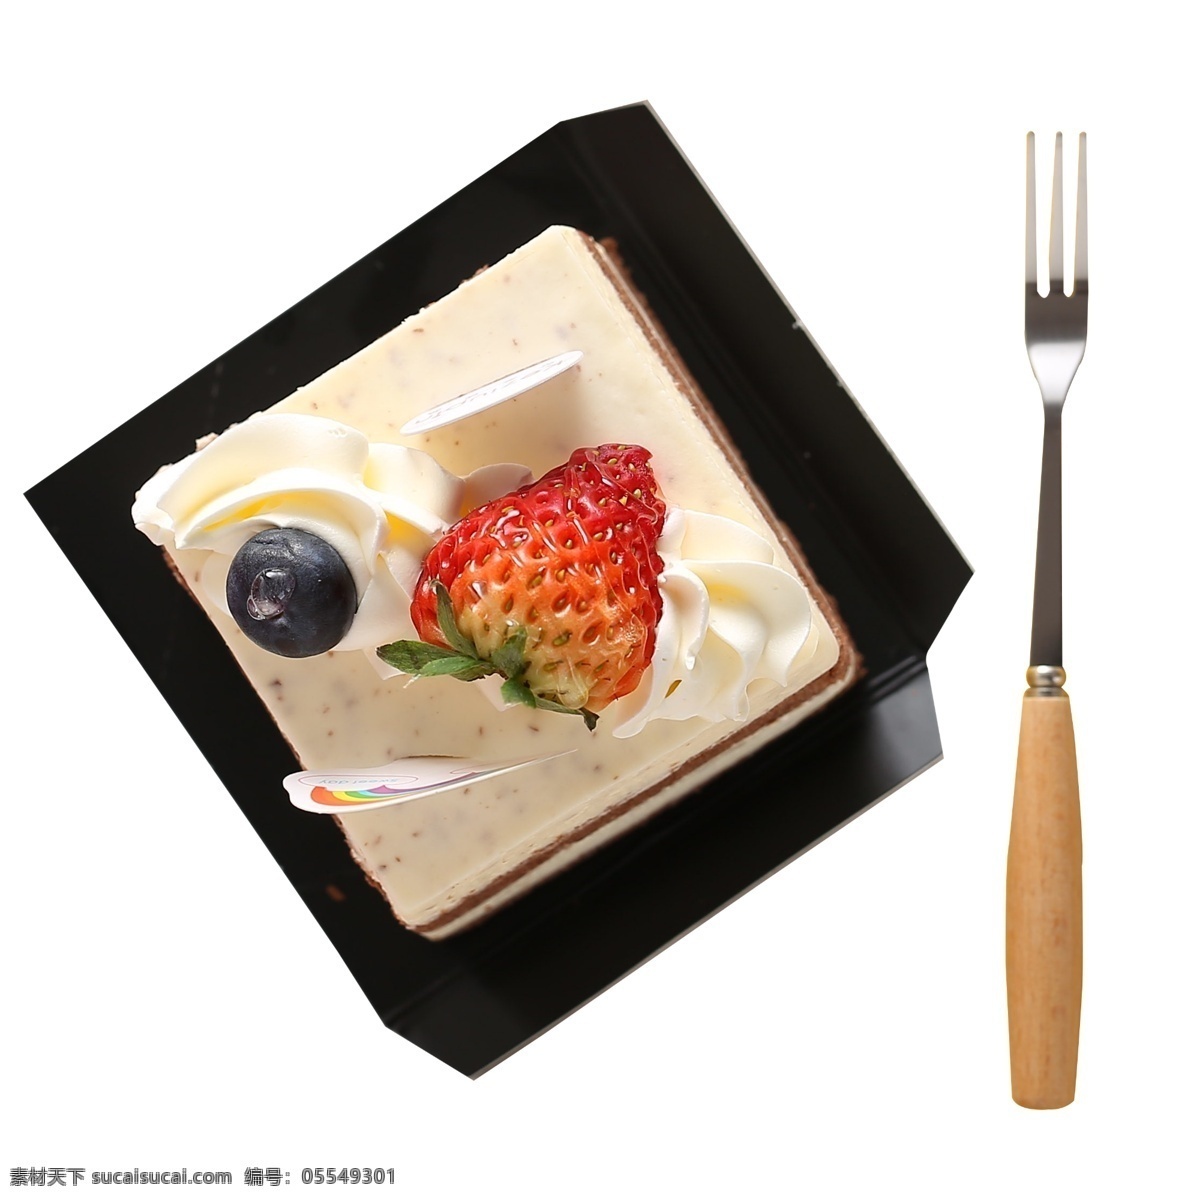 生日 草莓 奶油 蛋糕 叉子 草莓蛋糕 生日蛋糕 盒子 黑色 蛋糕盒子 餐具 草莓奶油蛋糕